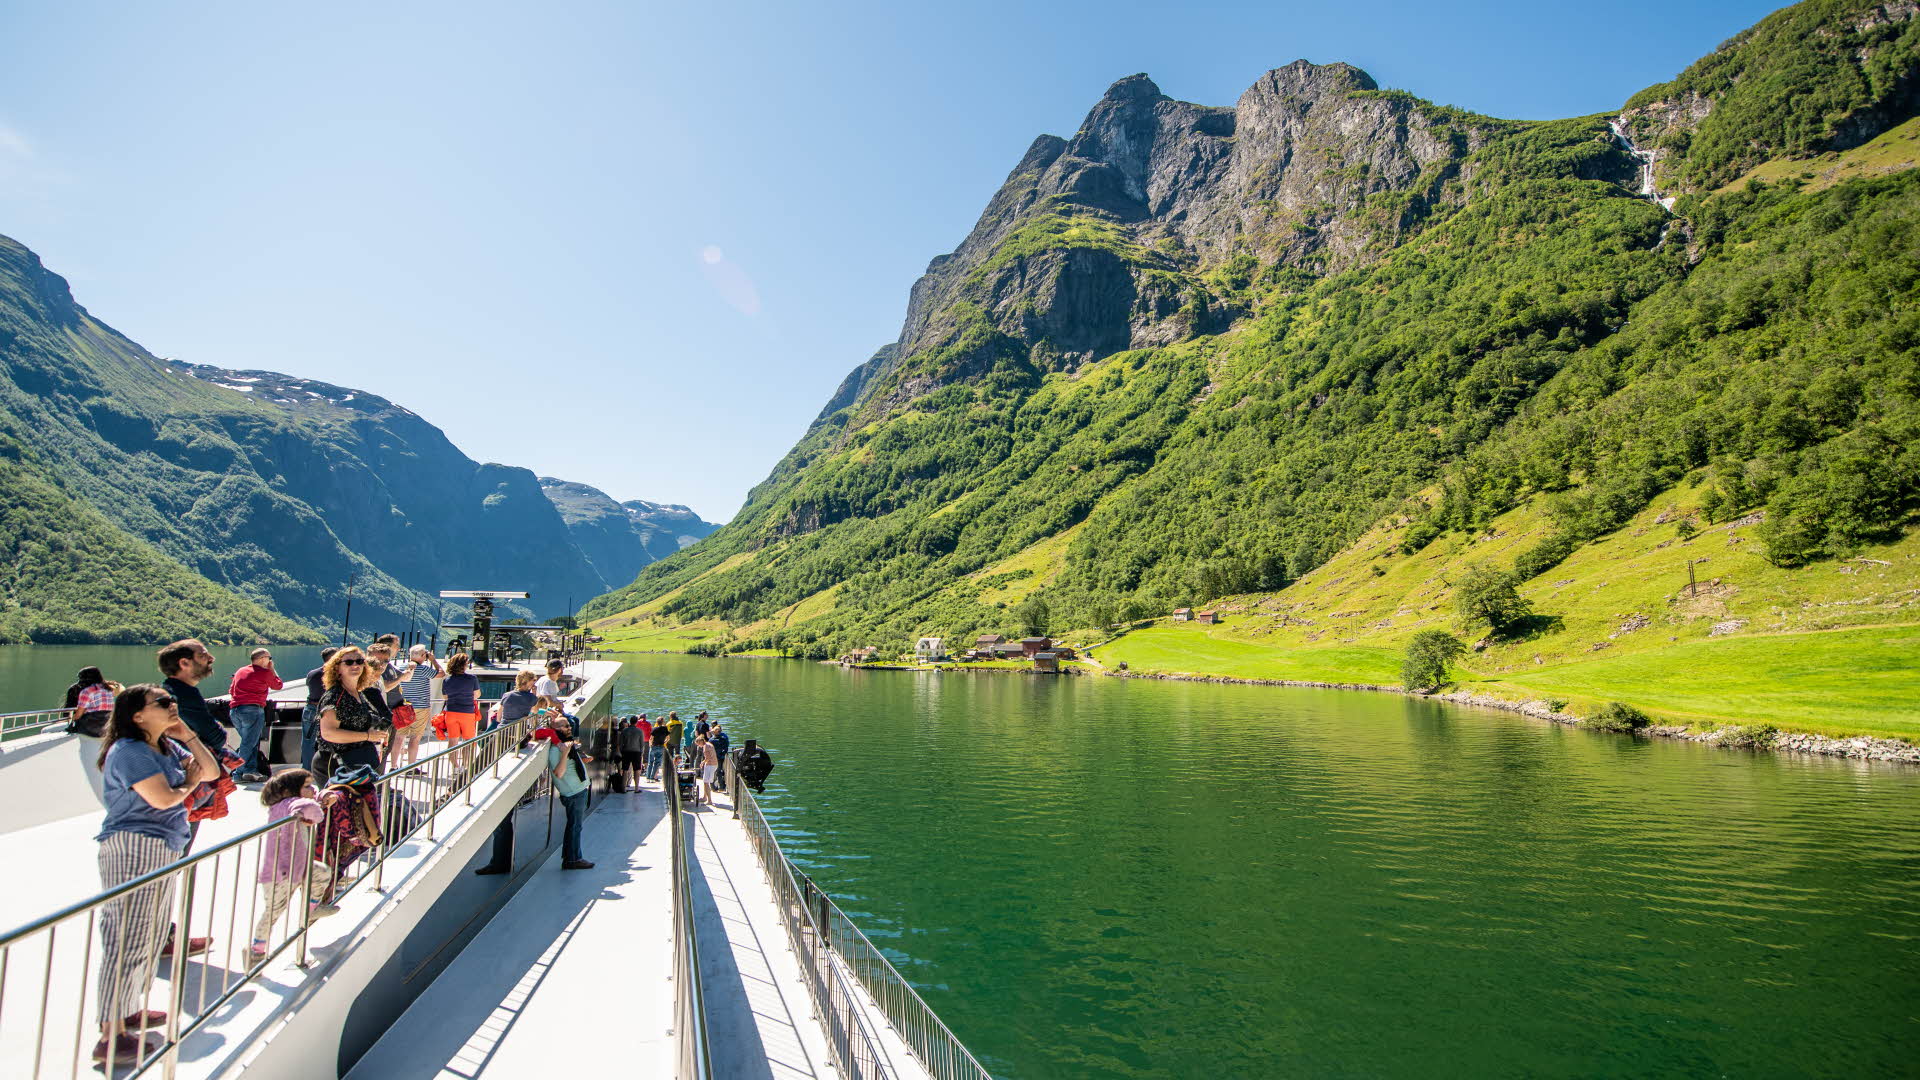 夏にユネスコに登録されているネーロイフィヨルド(Naroyfjord)を航海する電気船フューチャーオブフィヨルドのデッキにいる人々